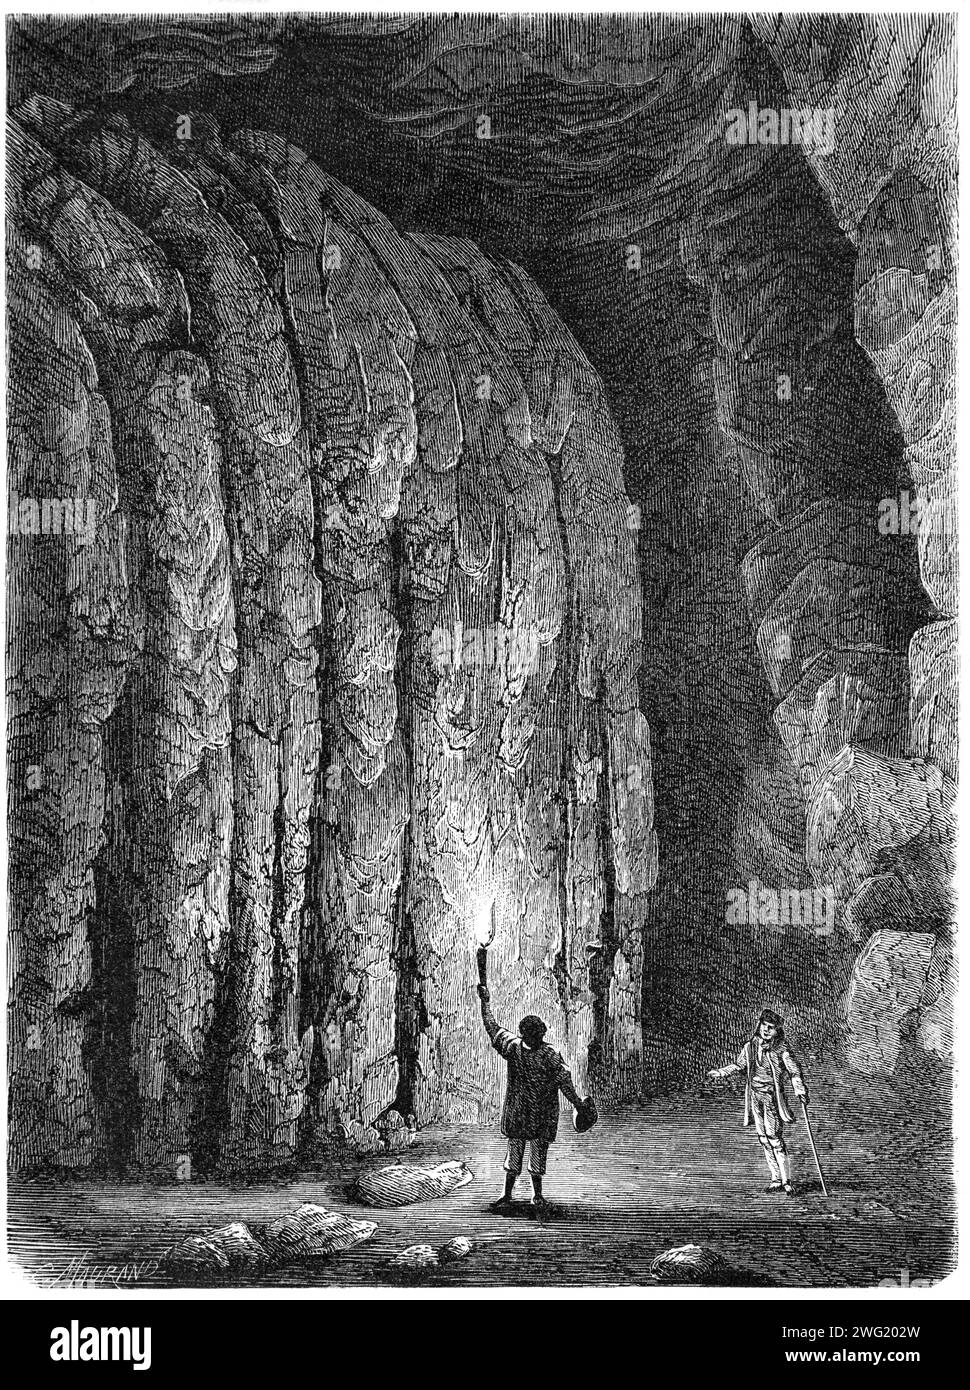 Les visiteurs explorent la Mammoth Cave au phare, le parc national de Mammoth Cave, le Kentucky, les États-Unis, les États-Unis ou les États-Unis d'Amérique. Gravure vintage ou historique ou illustration 1863 Banque D'Images